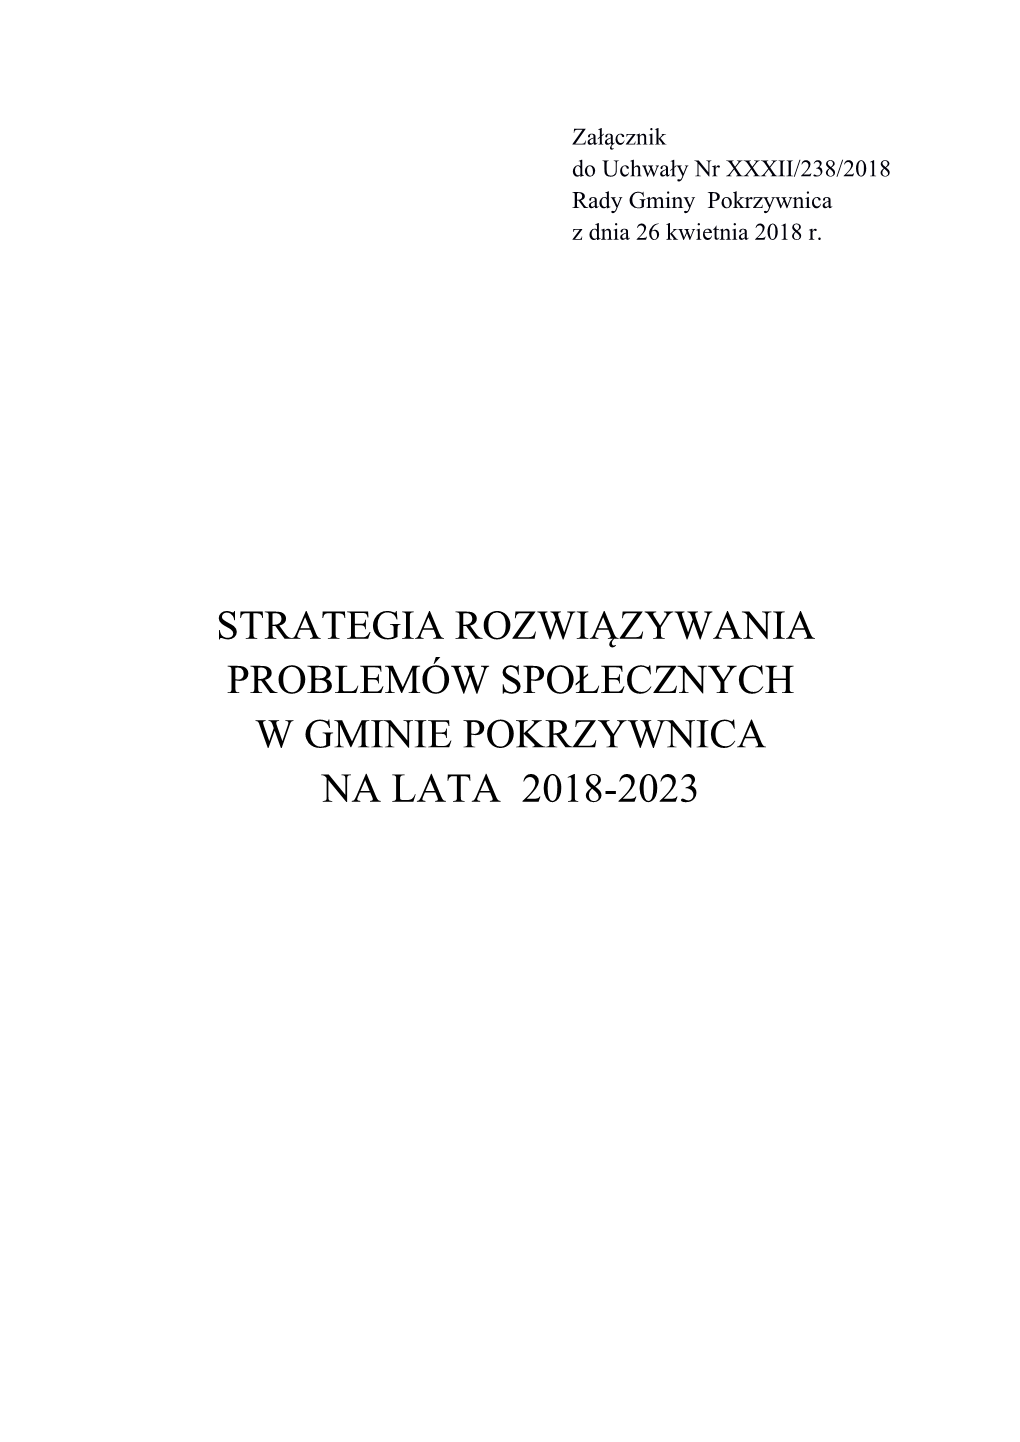 Strategia Rozwiązywania Problemów Społecznych W Gminie Pokrzywnica Na Lata 2018-2023